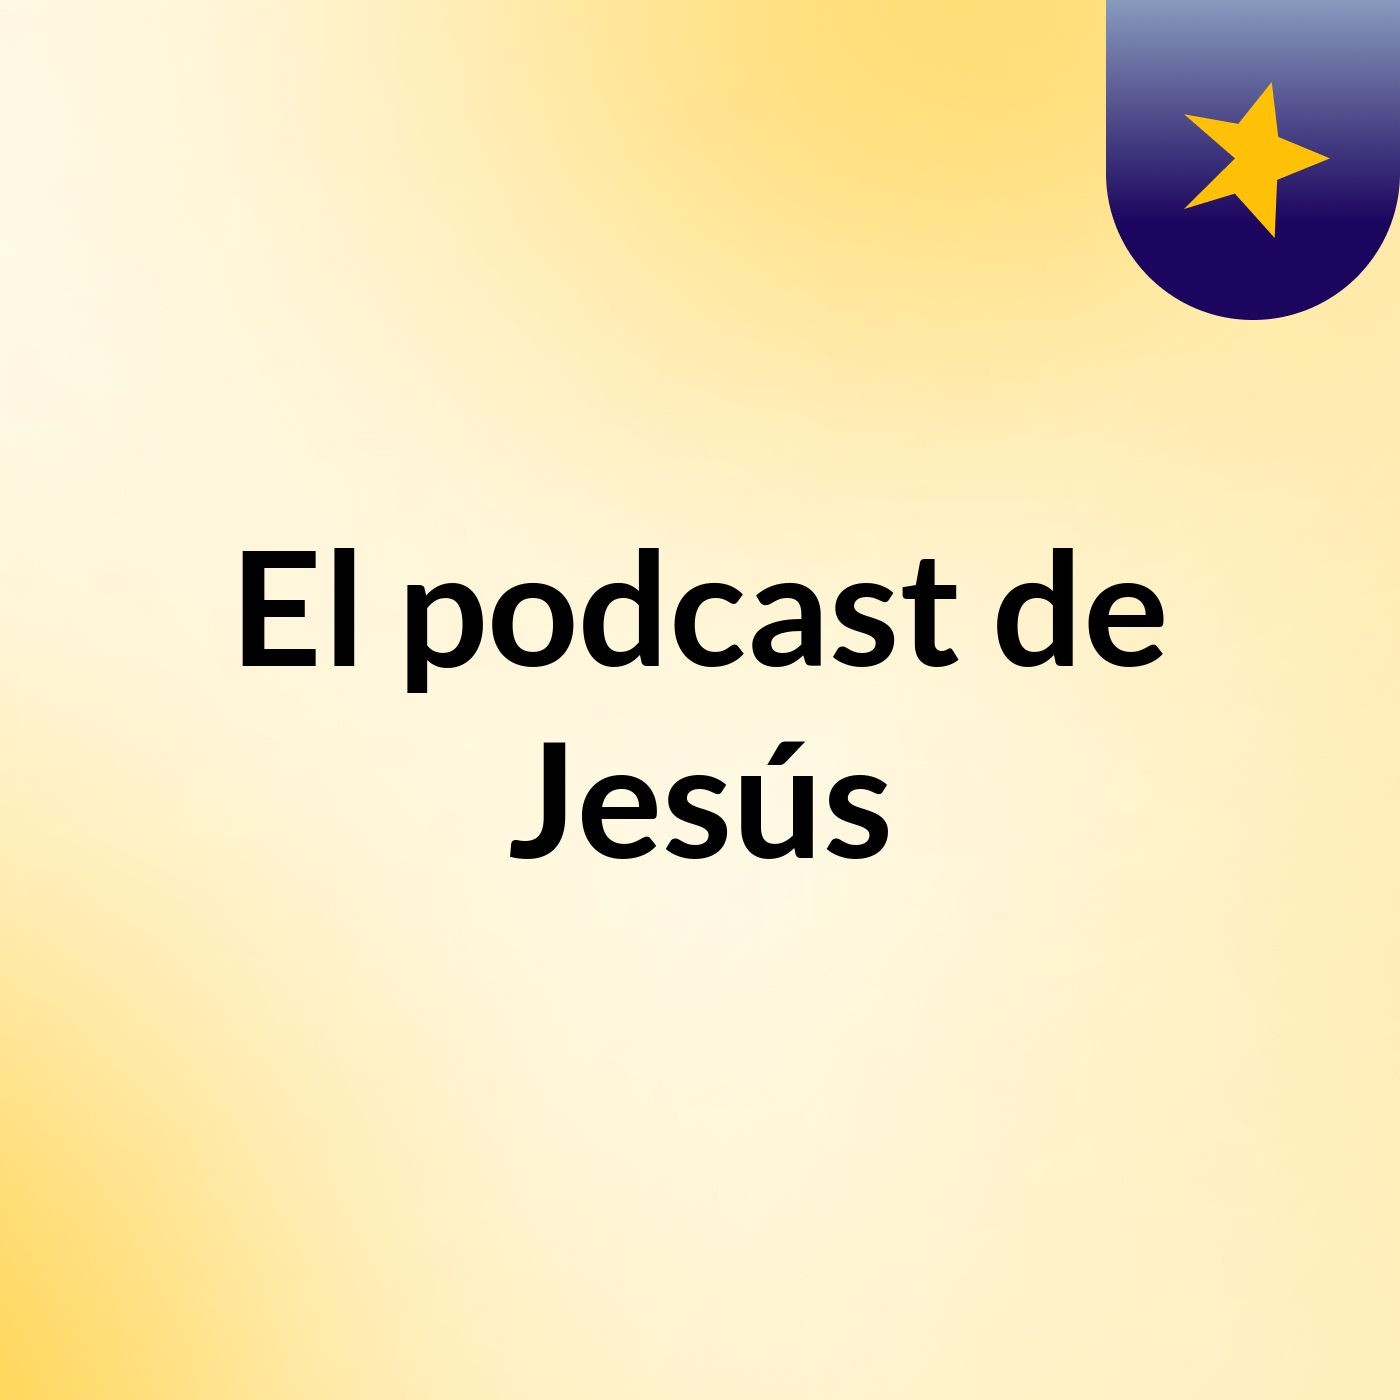 Episodio 27 - El podcast de Jesús